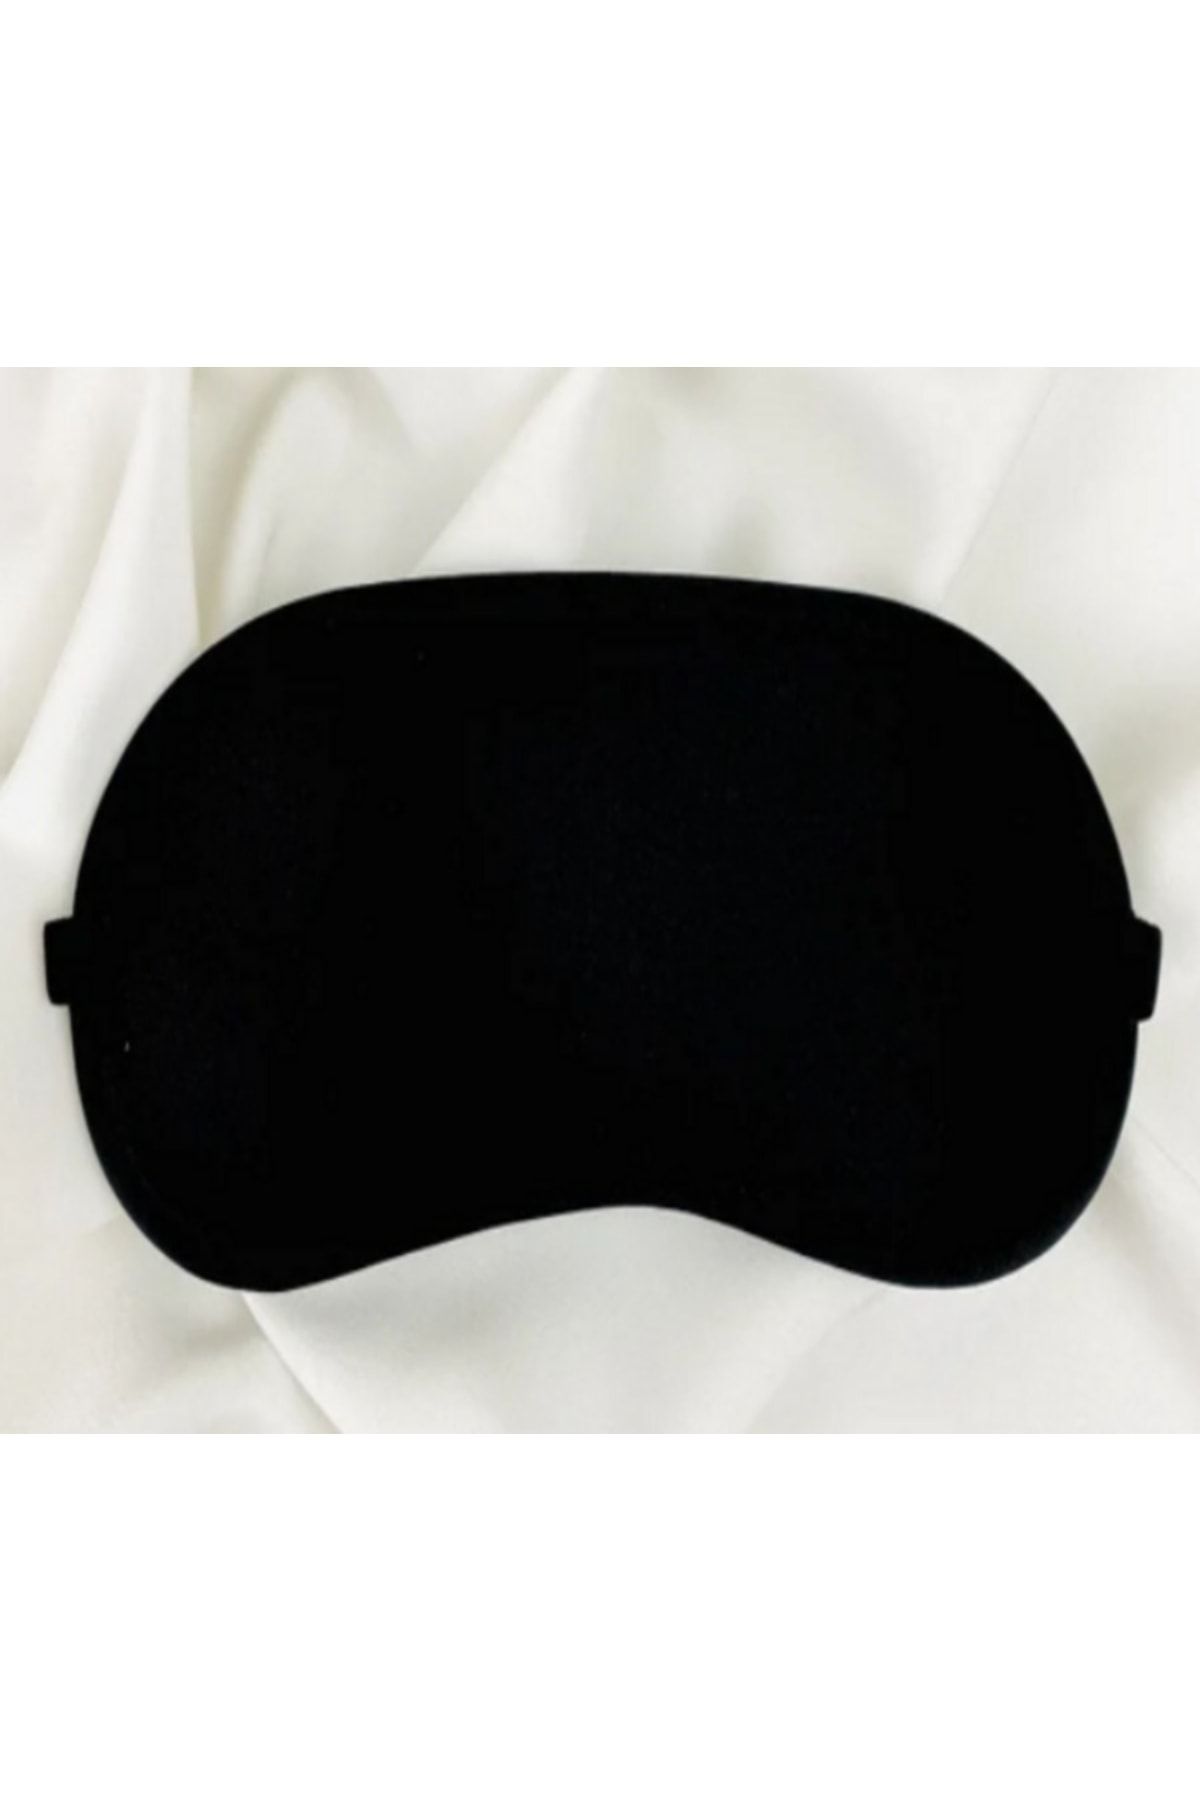 Medlight Göz Bandı - Işık Önleyici Uyku Bandı - Seyahat Uyku Göz Maskesi